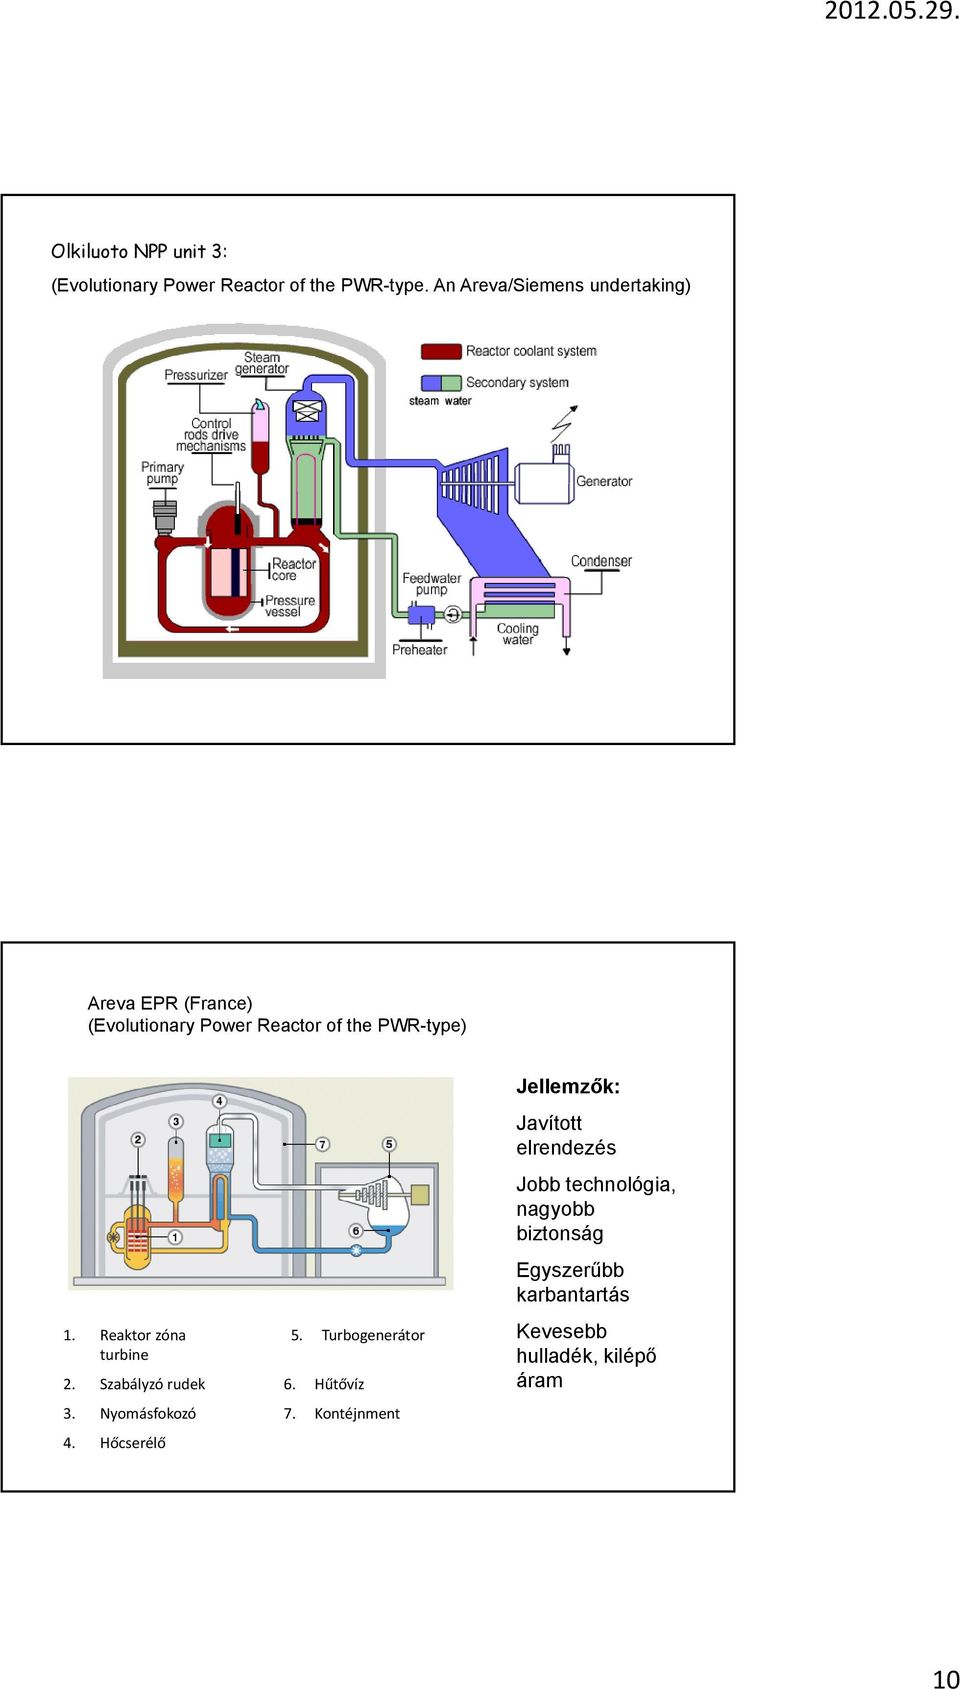 Reaktor zóna 5. Turbogenerátor turbine 2. Szabályzó rudek 6. Hűtővíz 3. Nyomásfokozó 7.